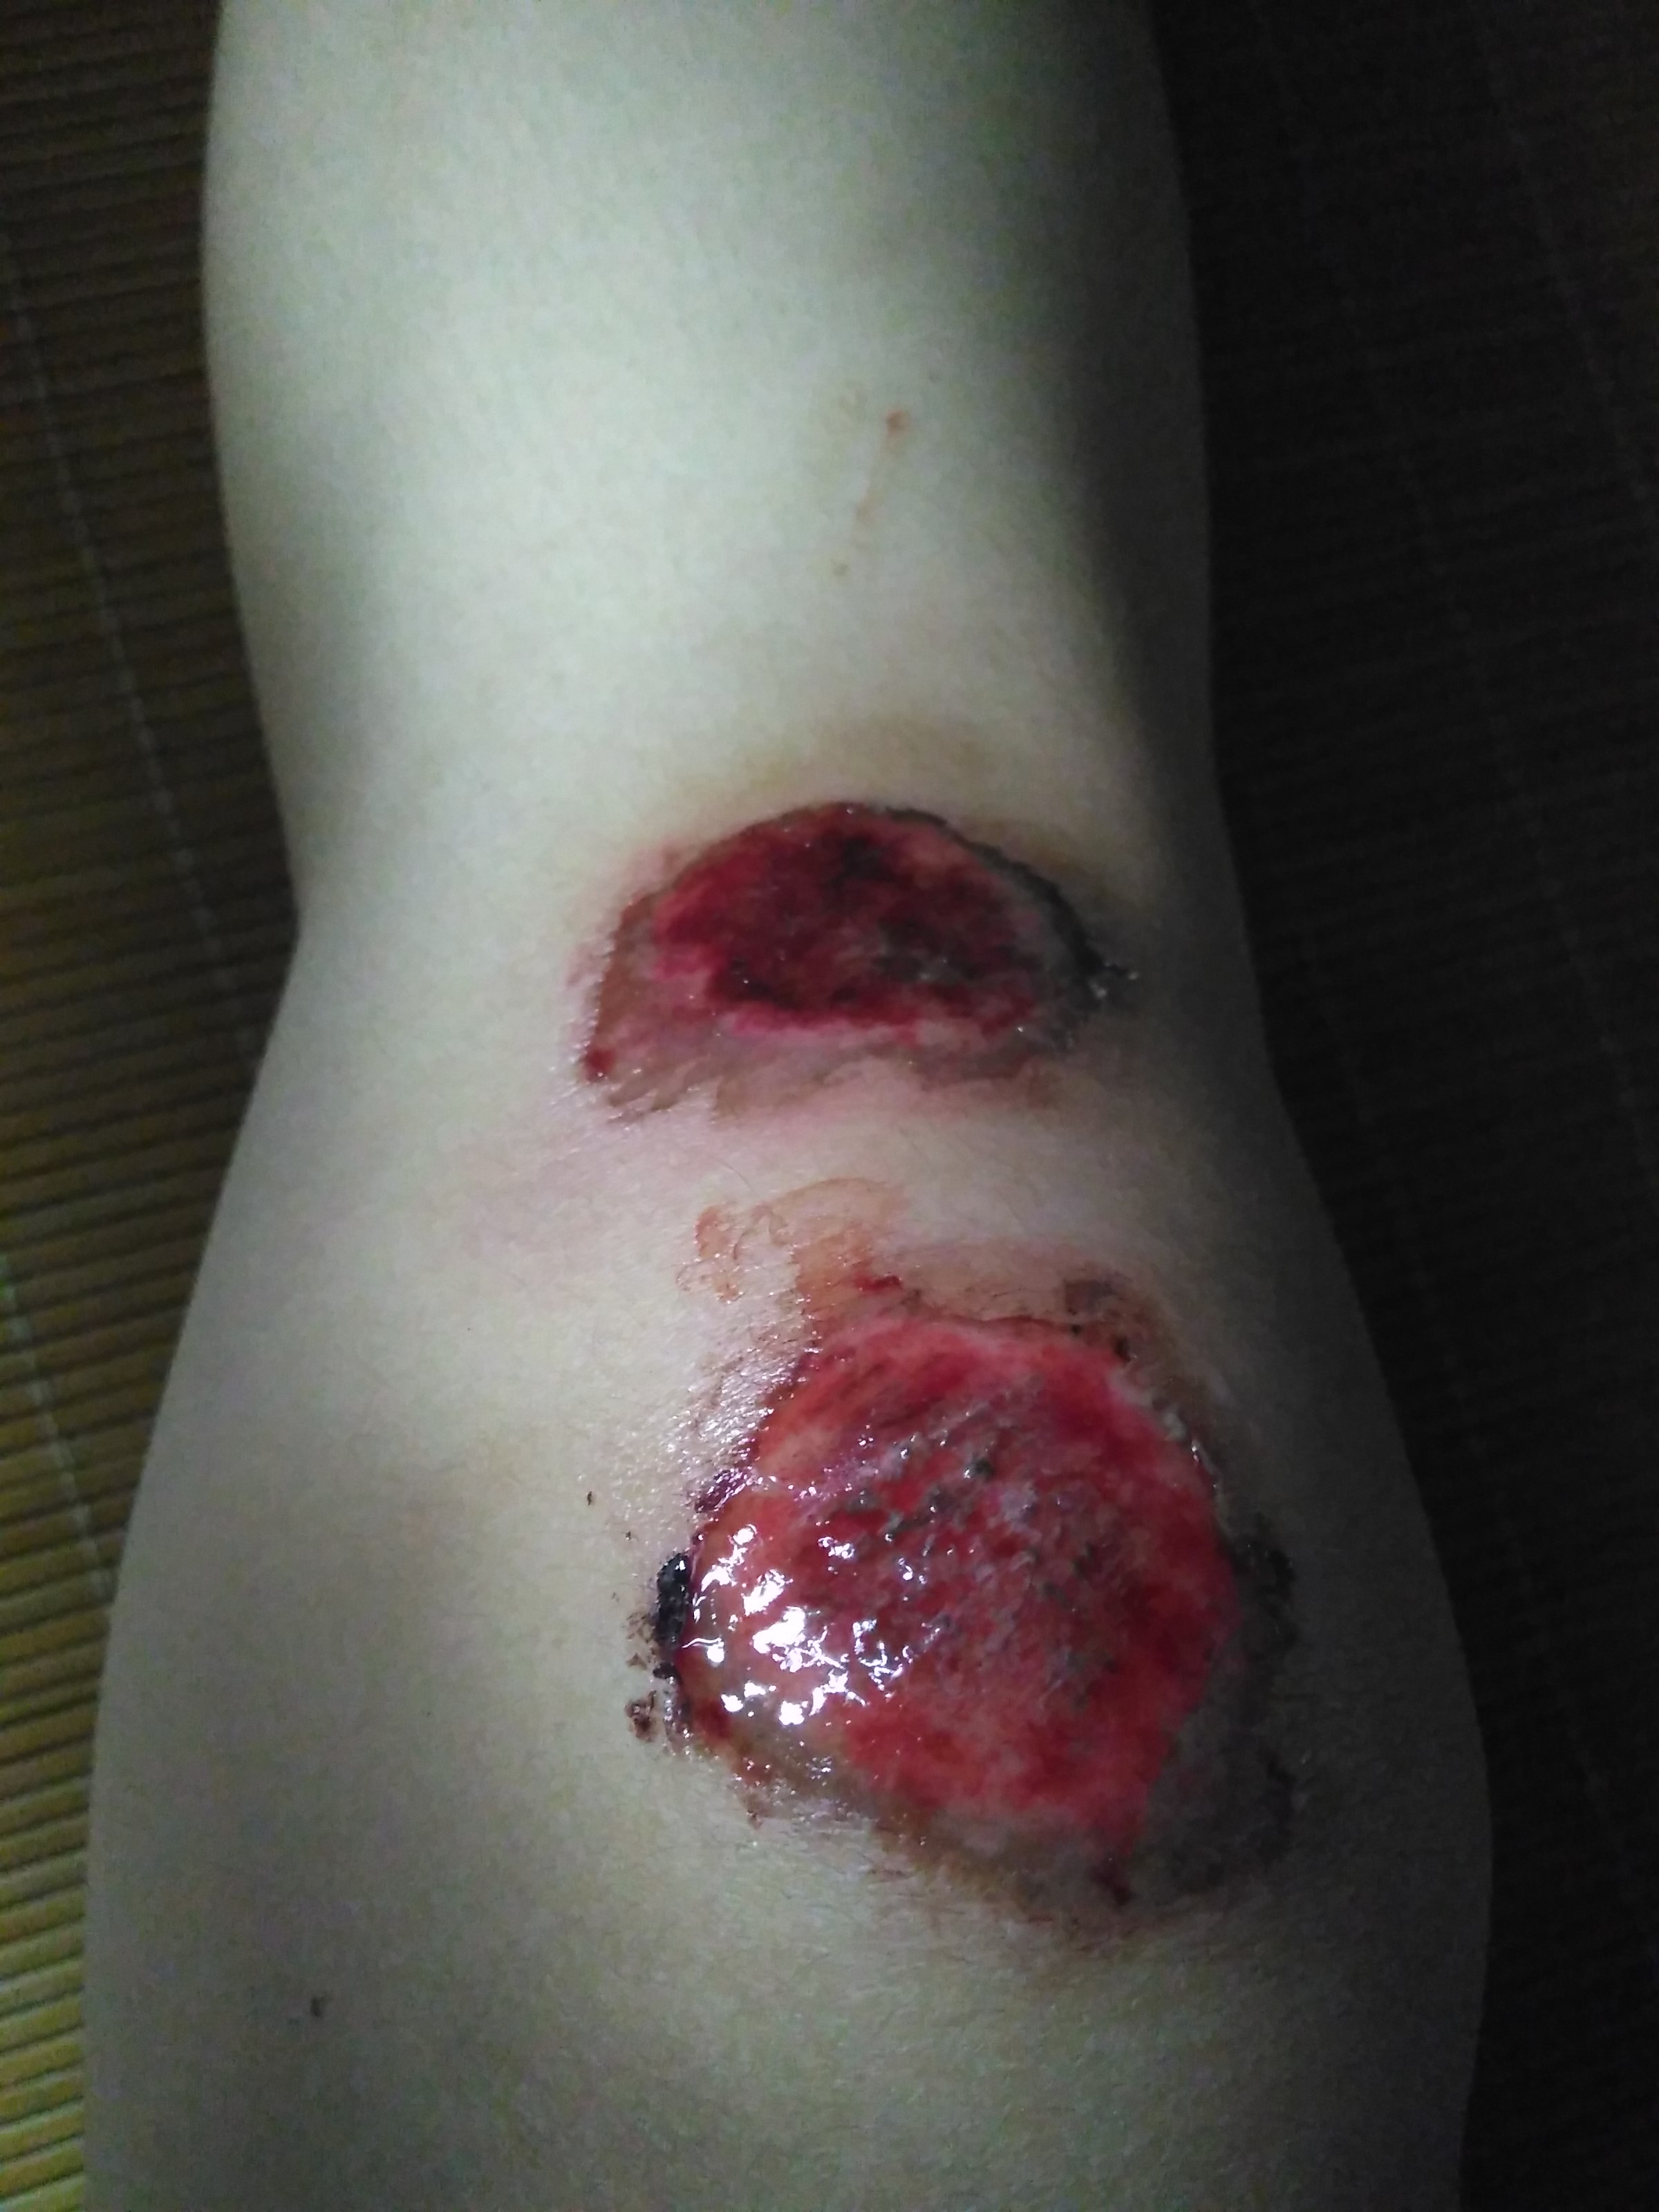 骑车摔倒伤口流血图片图片